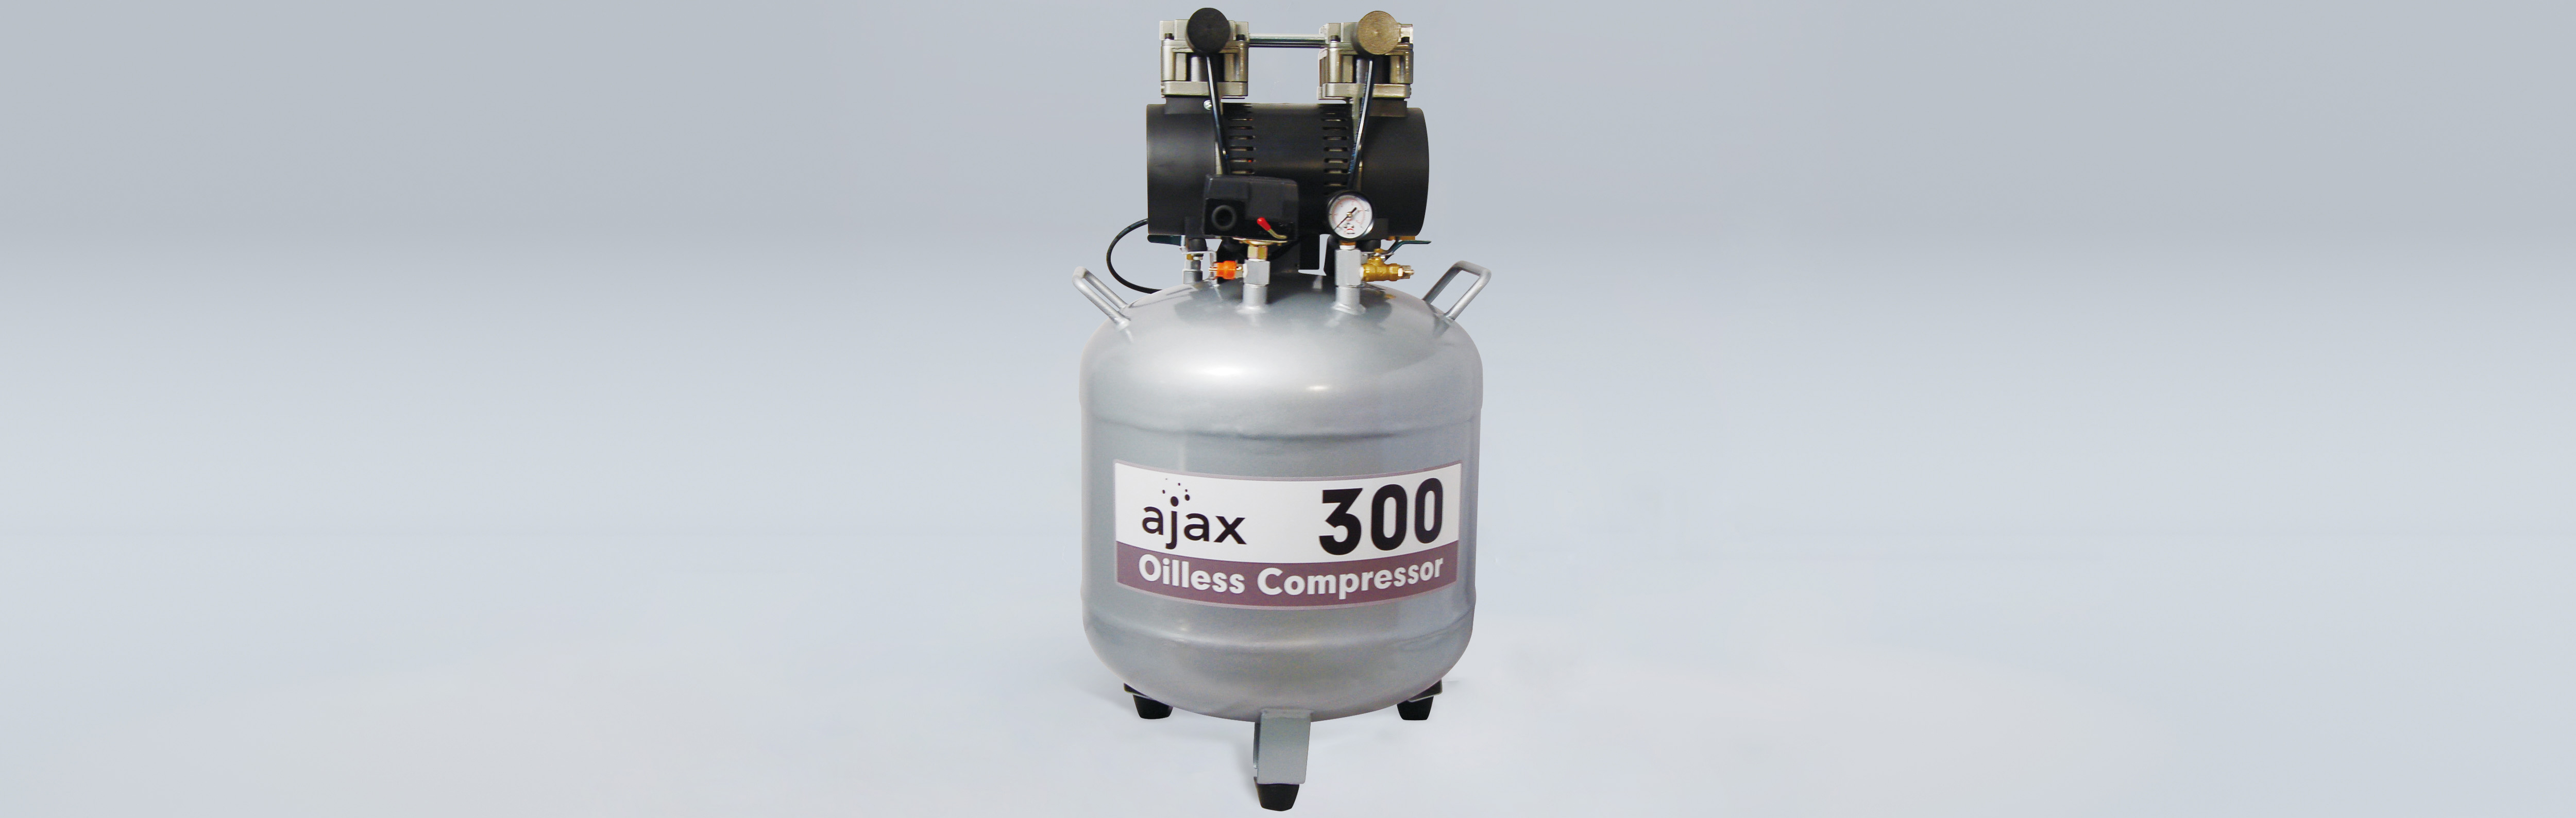 Compressore d'aria AJAX 300